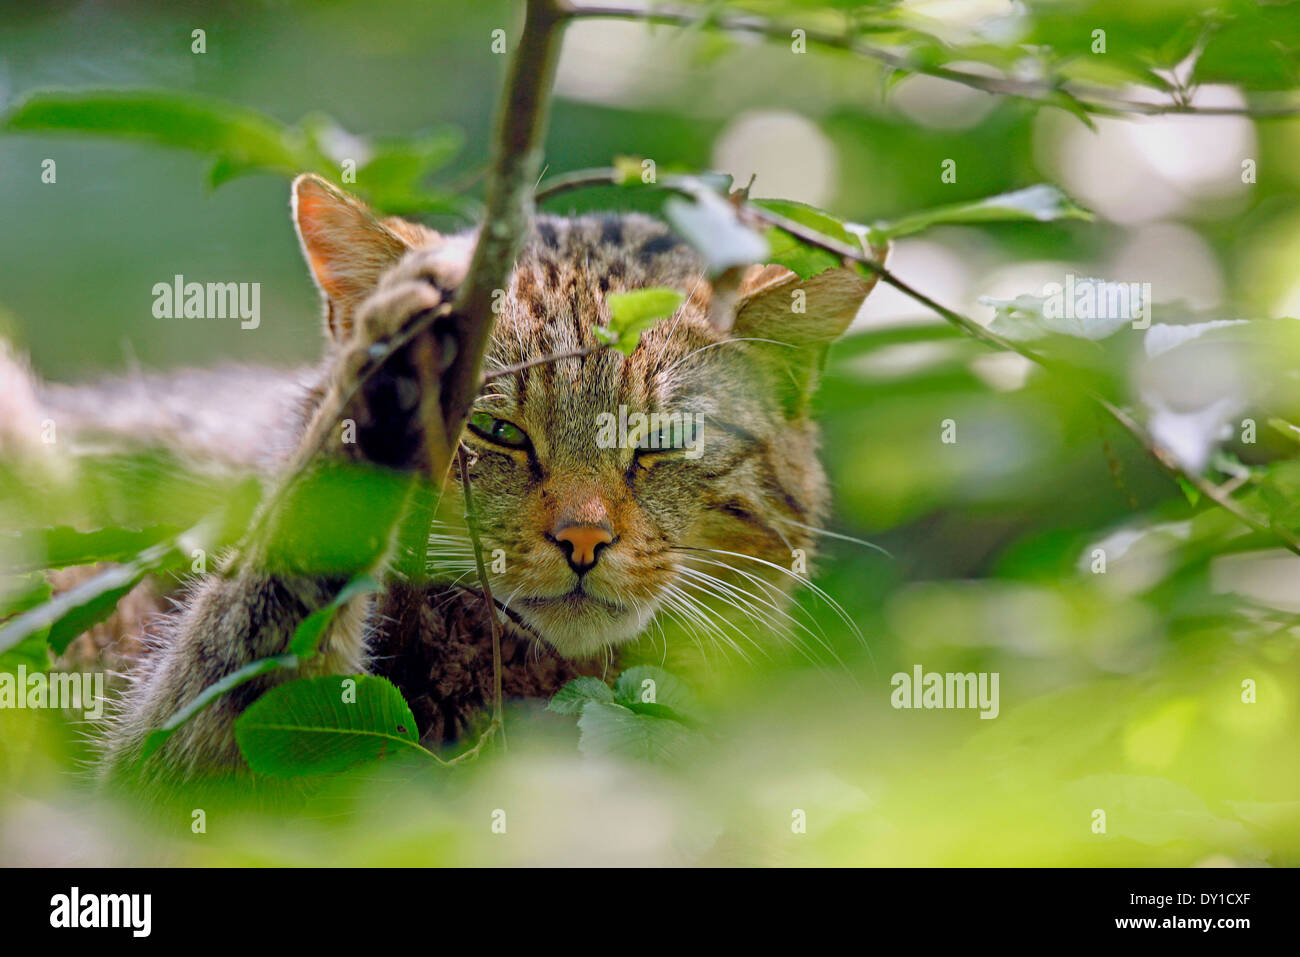 Gato Montés (Felis silvestris) acercamiento entre las hojas Foto de stock